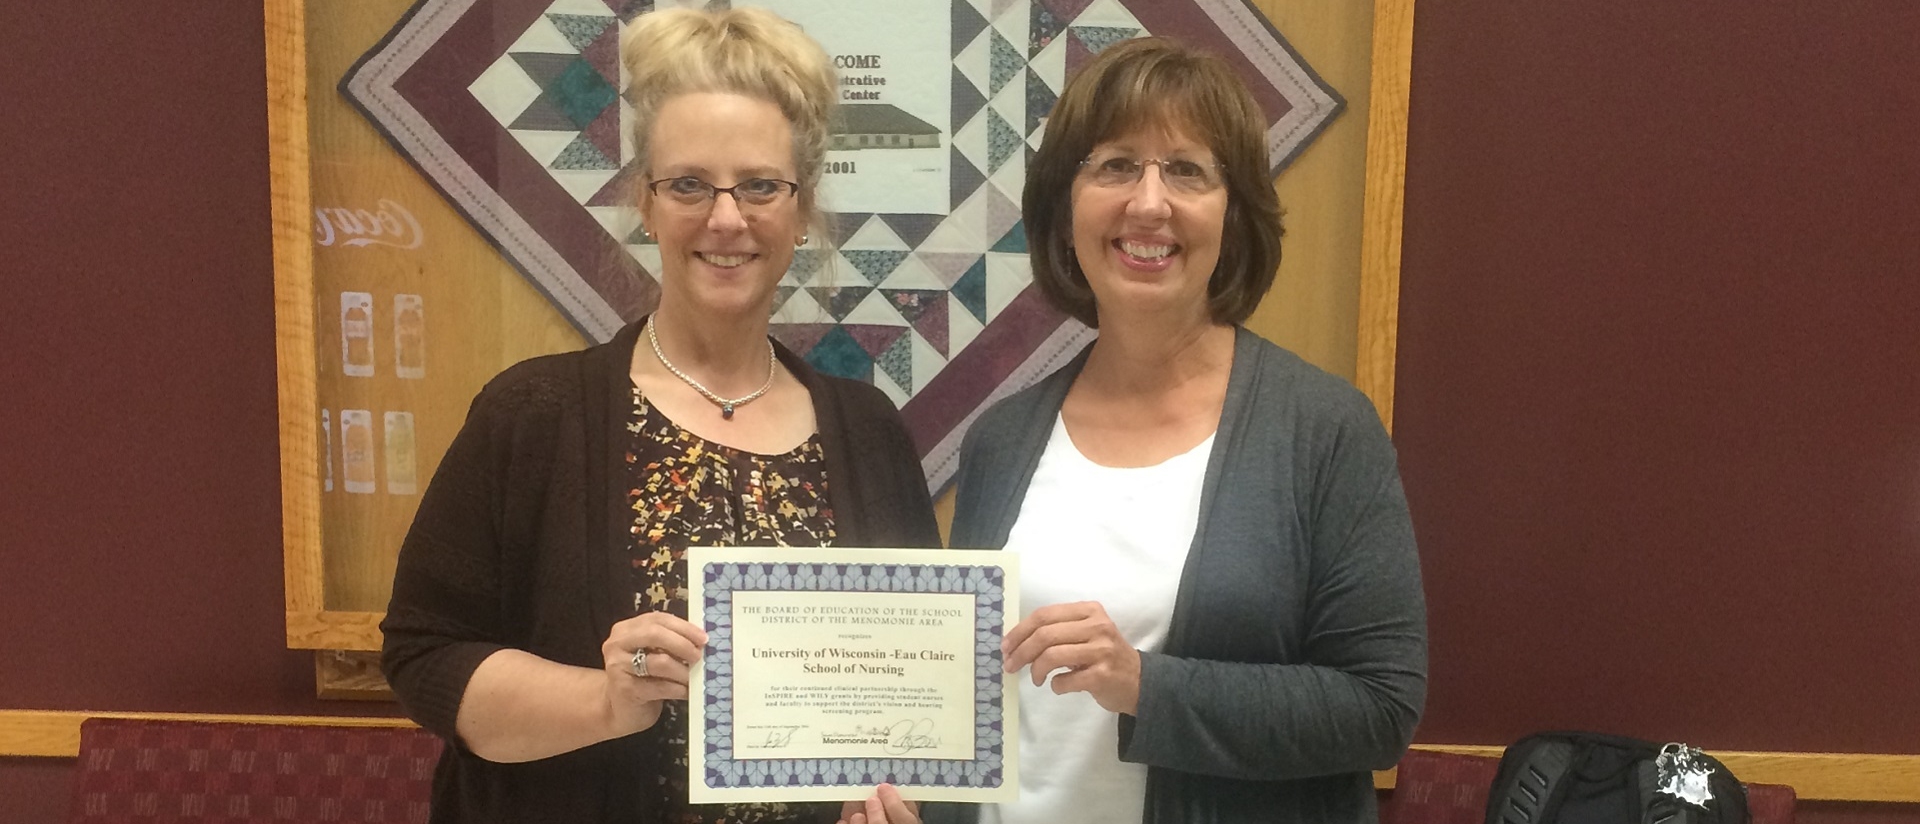 Menominee School District commendation for UW-Eau Claire Nursing